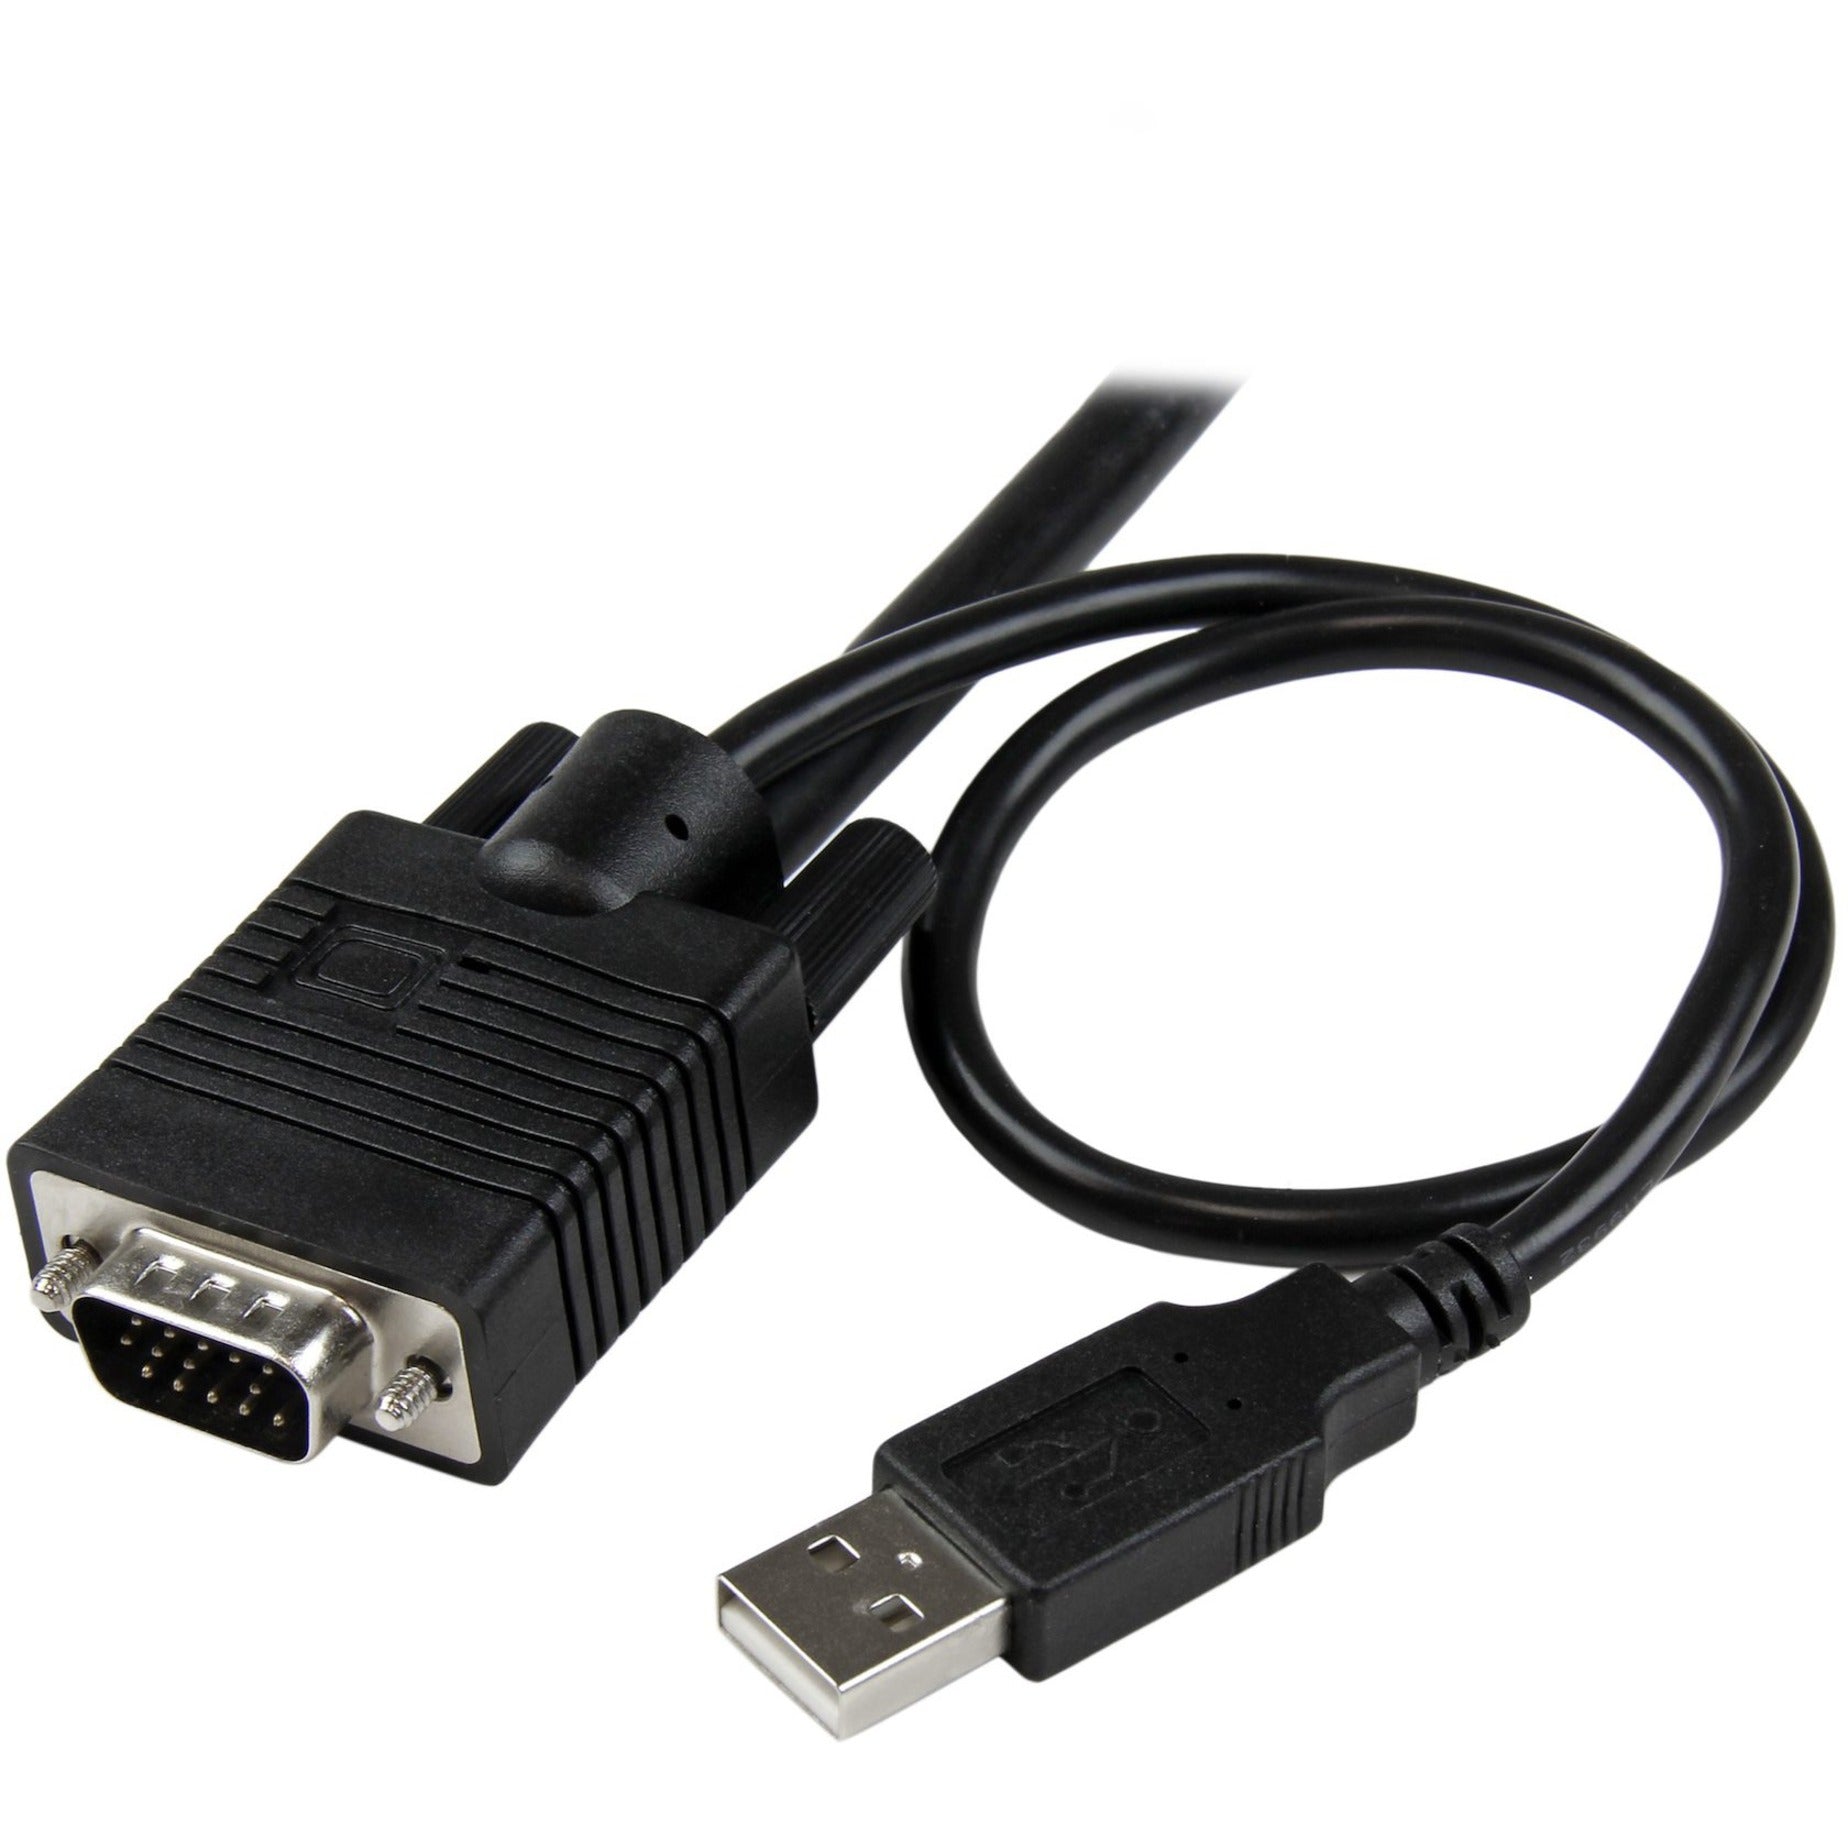 StarTech.com SV211USB 2 Port USB VGA Cable KVM Switch - USB Powered with Remote Switch, QXGA 2048 x 1536, 2 Year Warranty